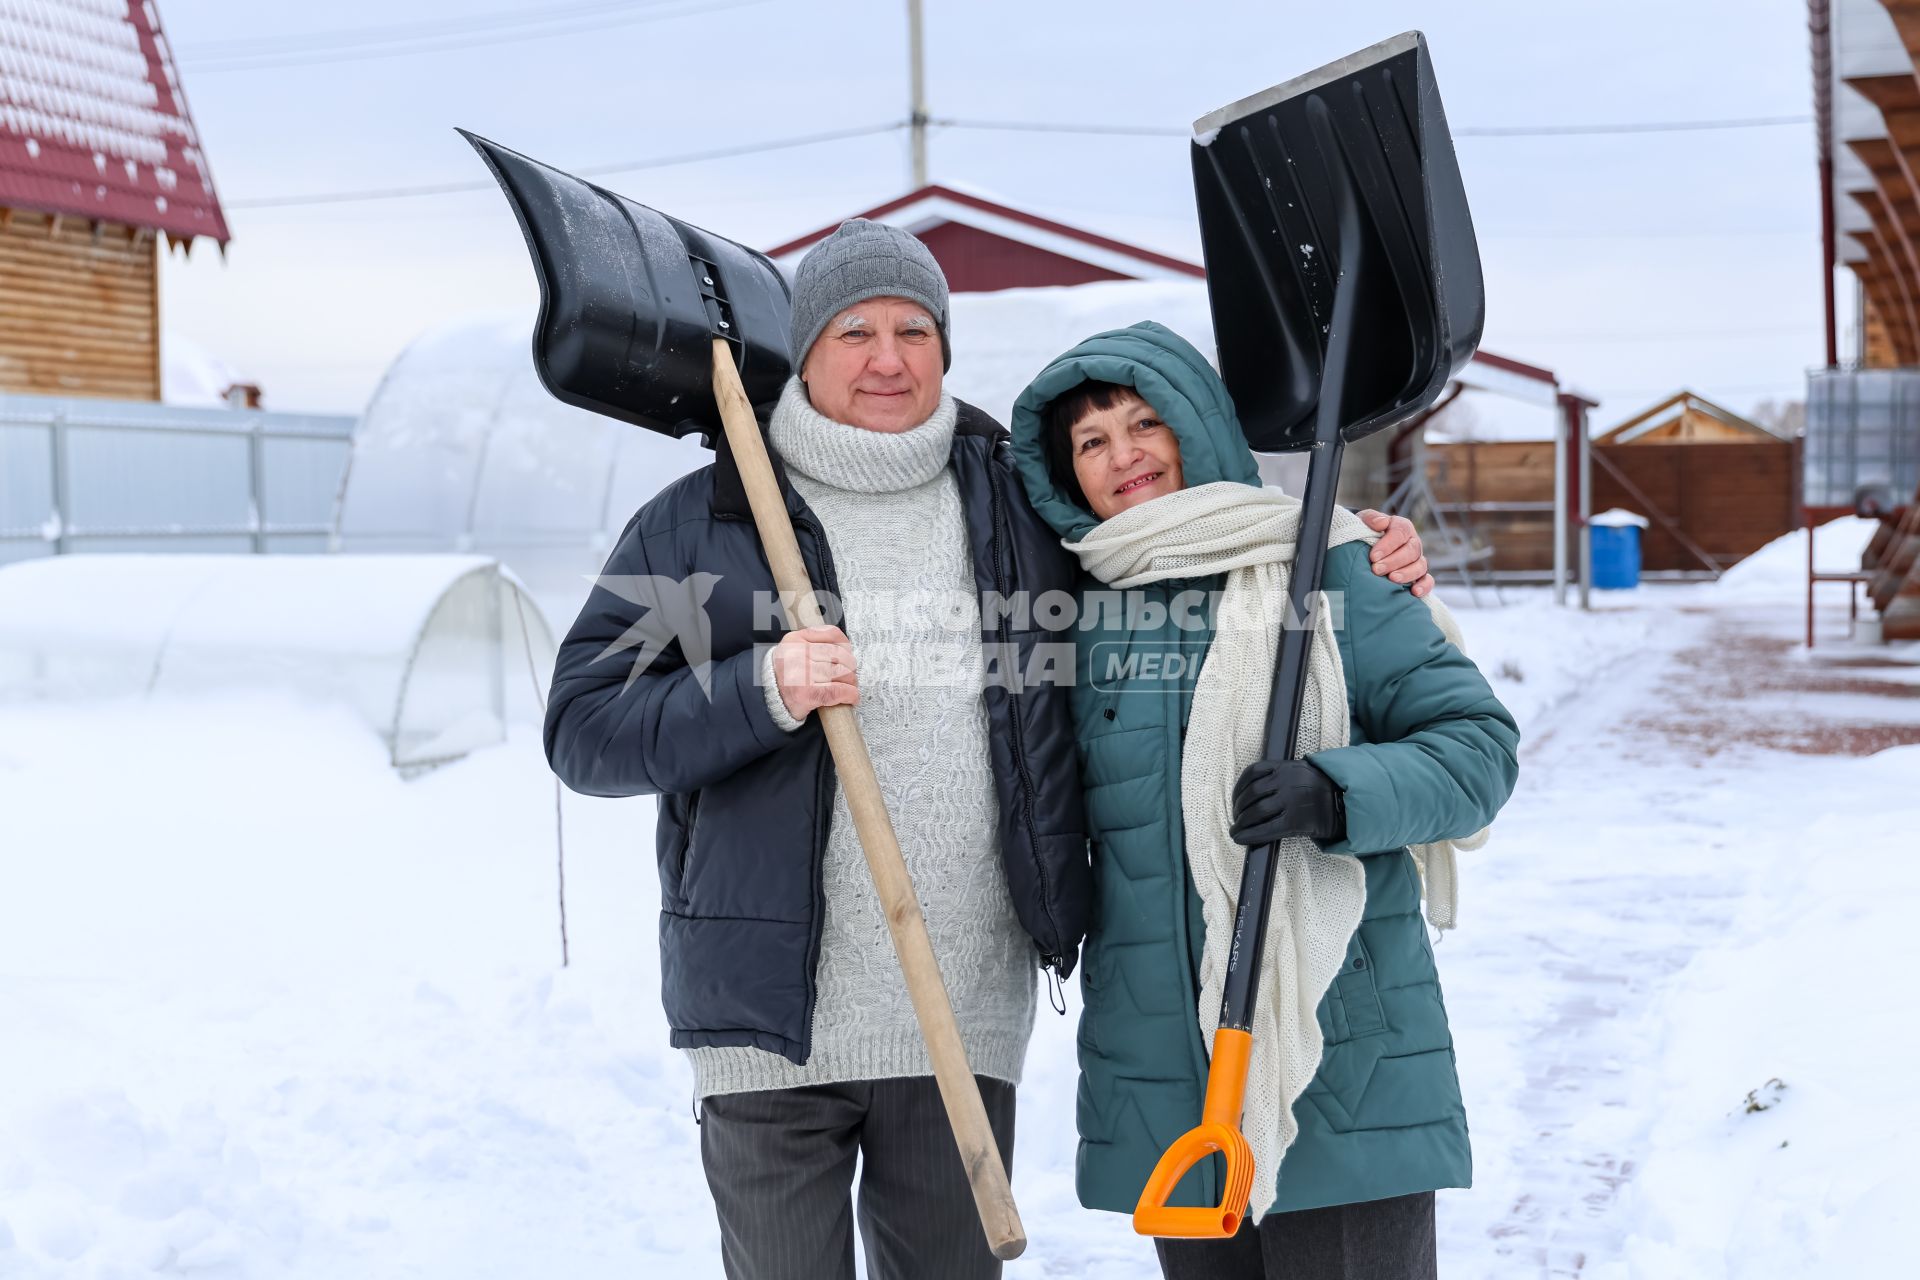 Красноярск. Пожилая пара убирает снег на своем приусадебном участке.